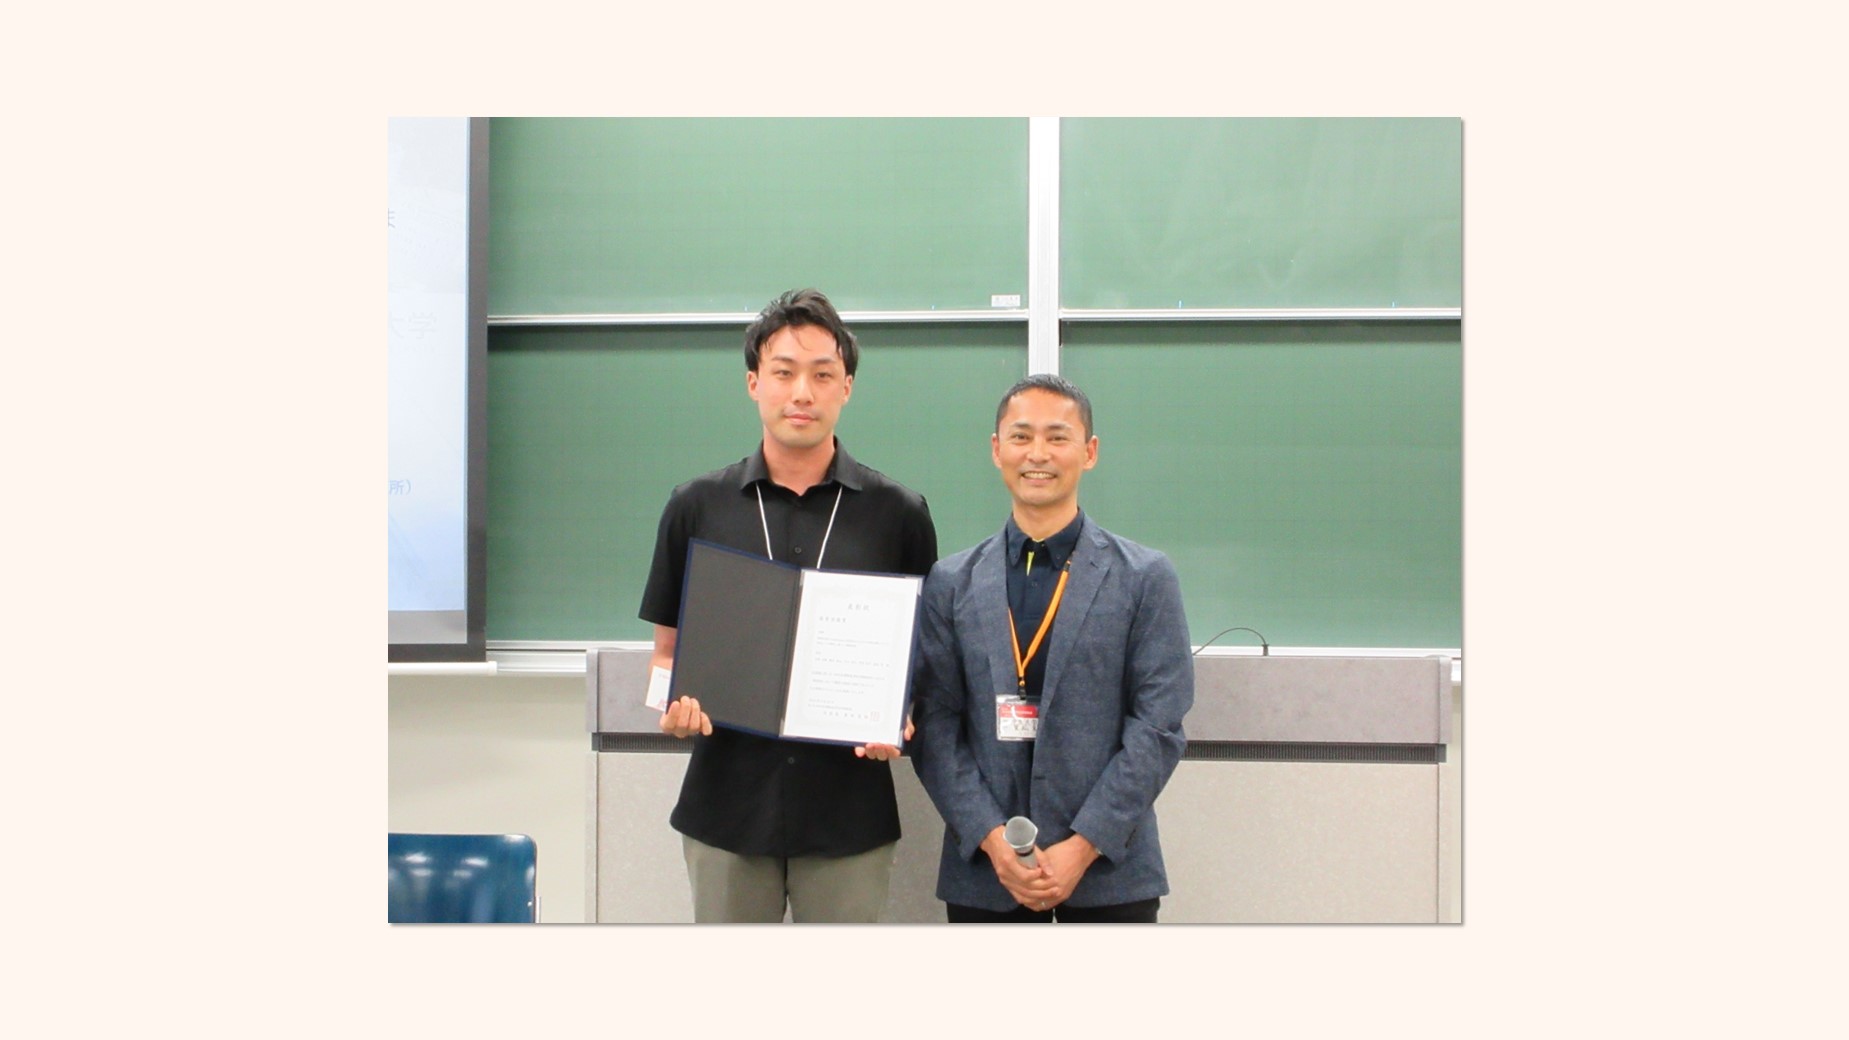 北濃研究員が第25回日本運動疫学会学術総会で優秀演題賞を受賞しました